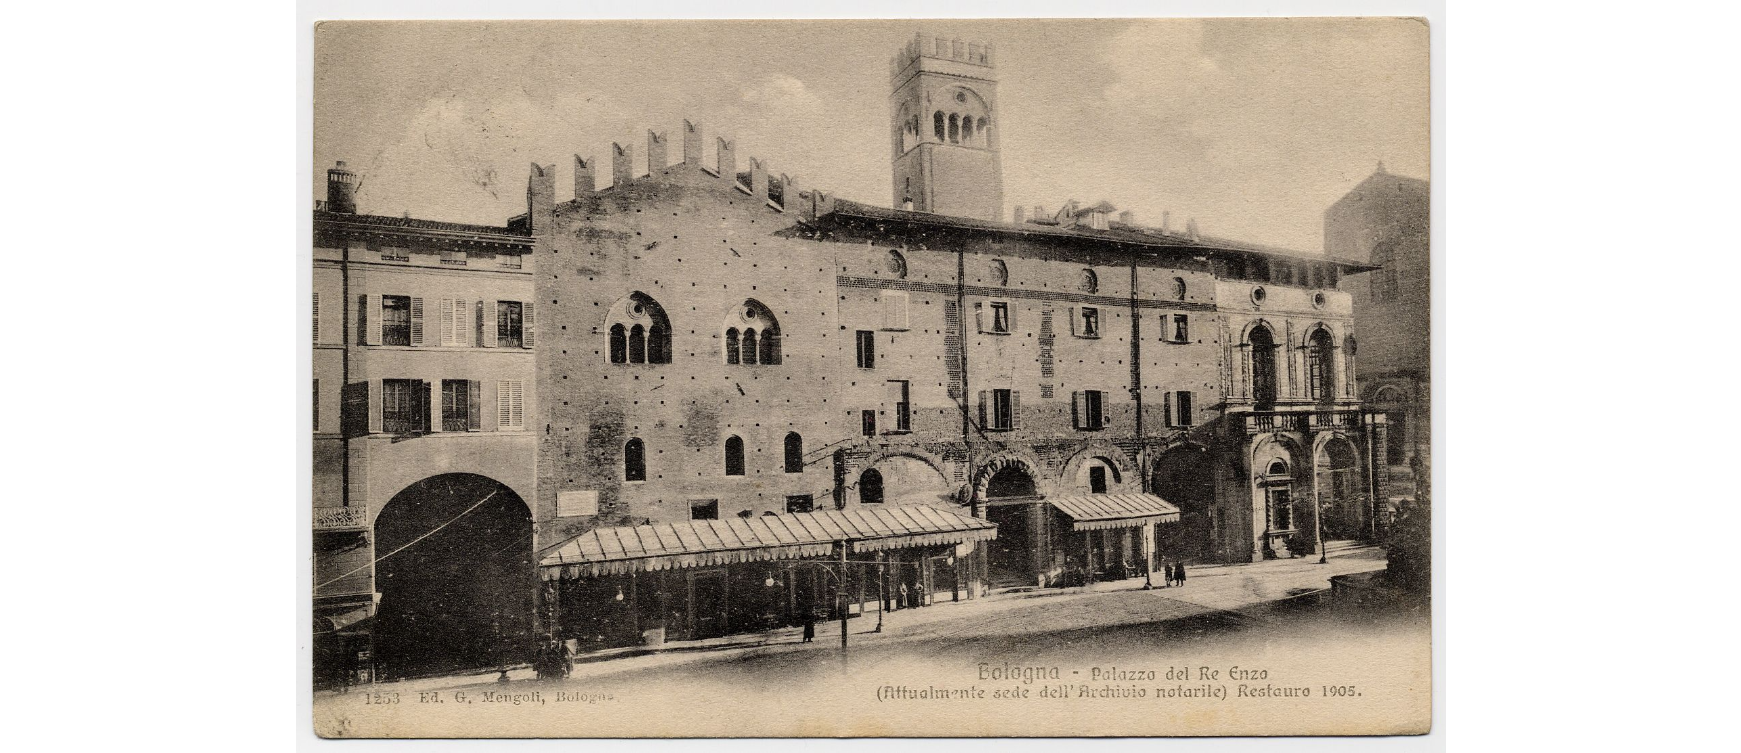 Fotografo non identificato, Bologna - Palazzo Re Enzo restaurato nel 19051916, cartolina, FFC016267